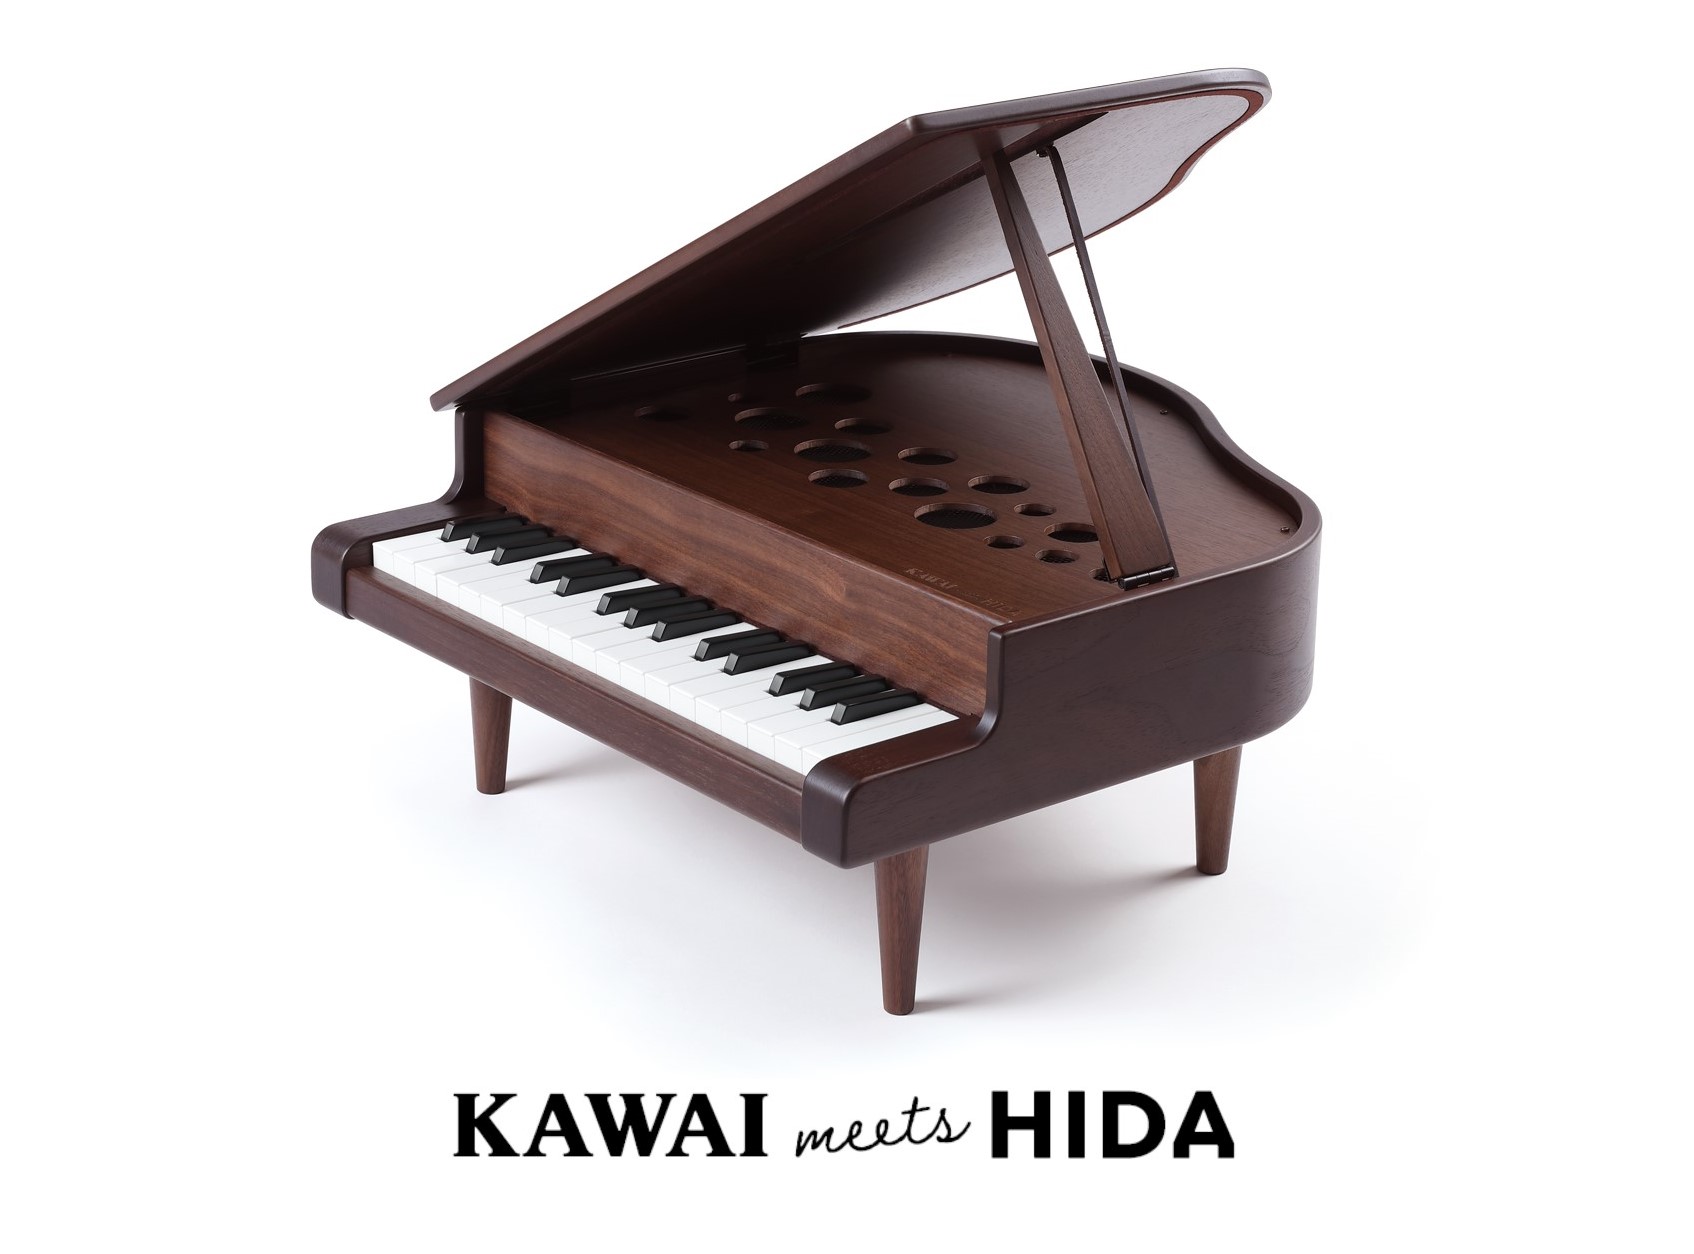 小さなピアニストに、小さな本物を。”『KAWAI meets HIDA ミニグランド ...